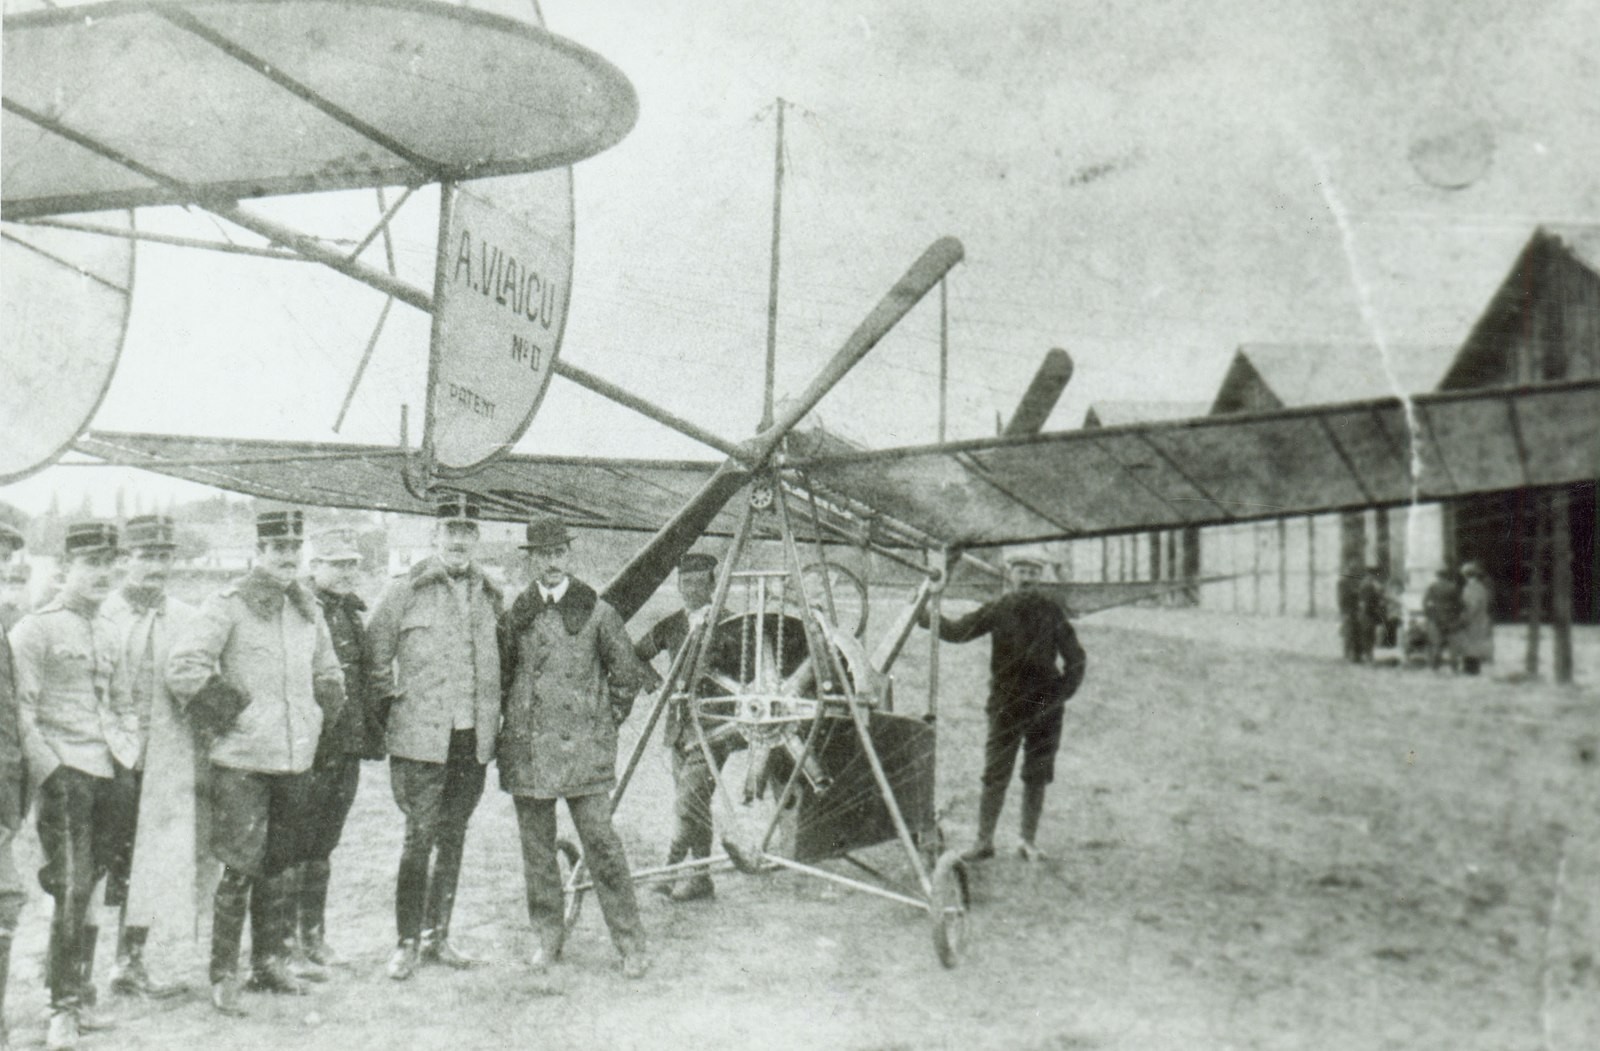 Аурел Влайку пытался первым перелететь через Карпаты на своем самолёте A. Vlaicu Nr. II, летчик разбился насмерть